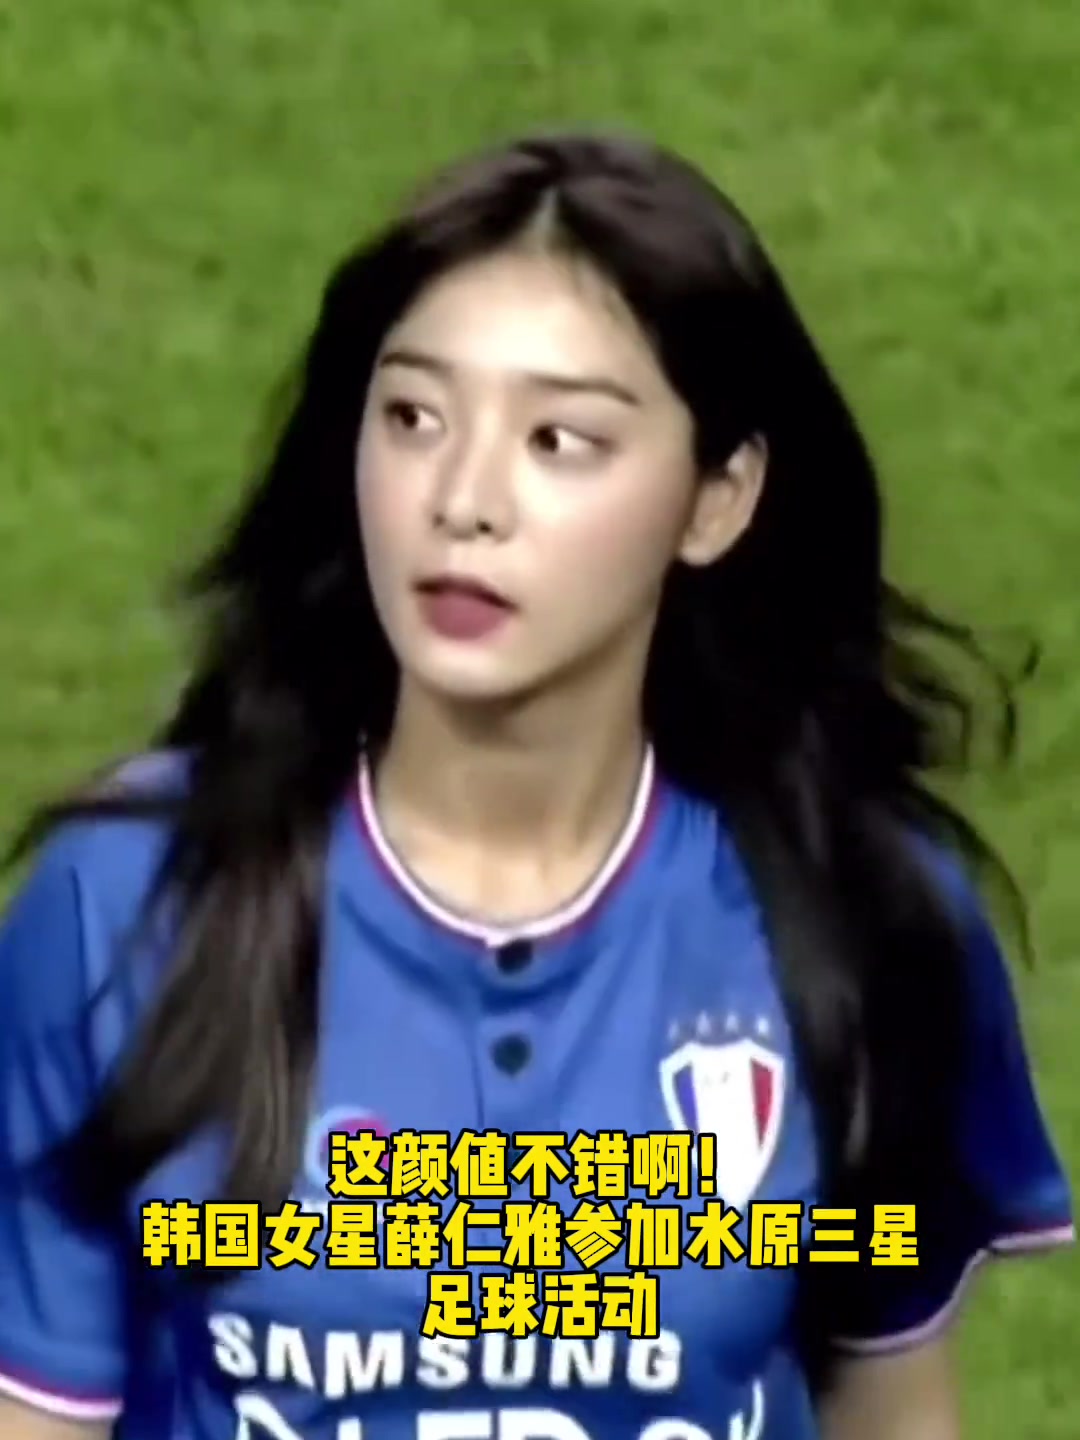  颜值如何韩国女星参加足球活动小秀球技